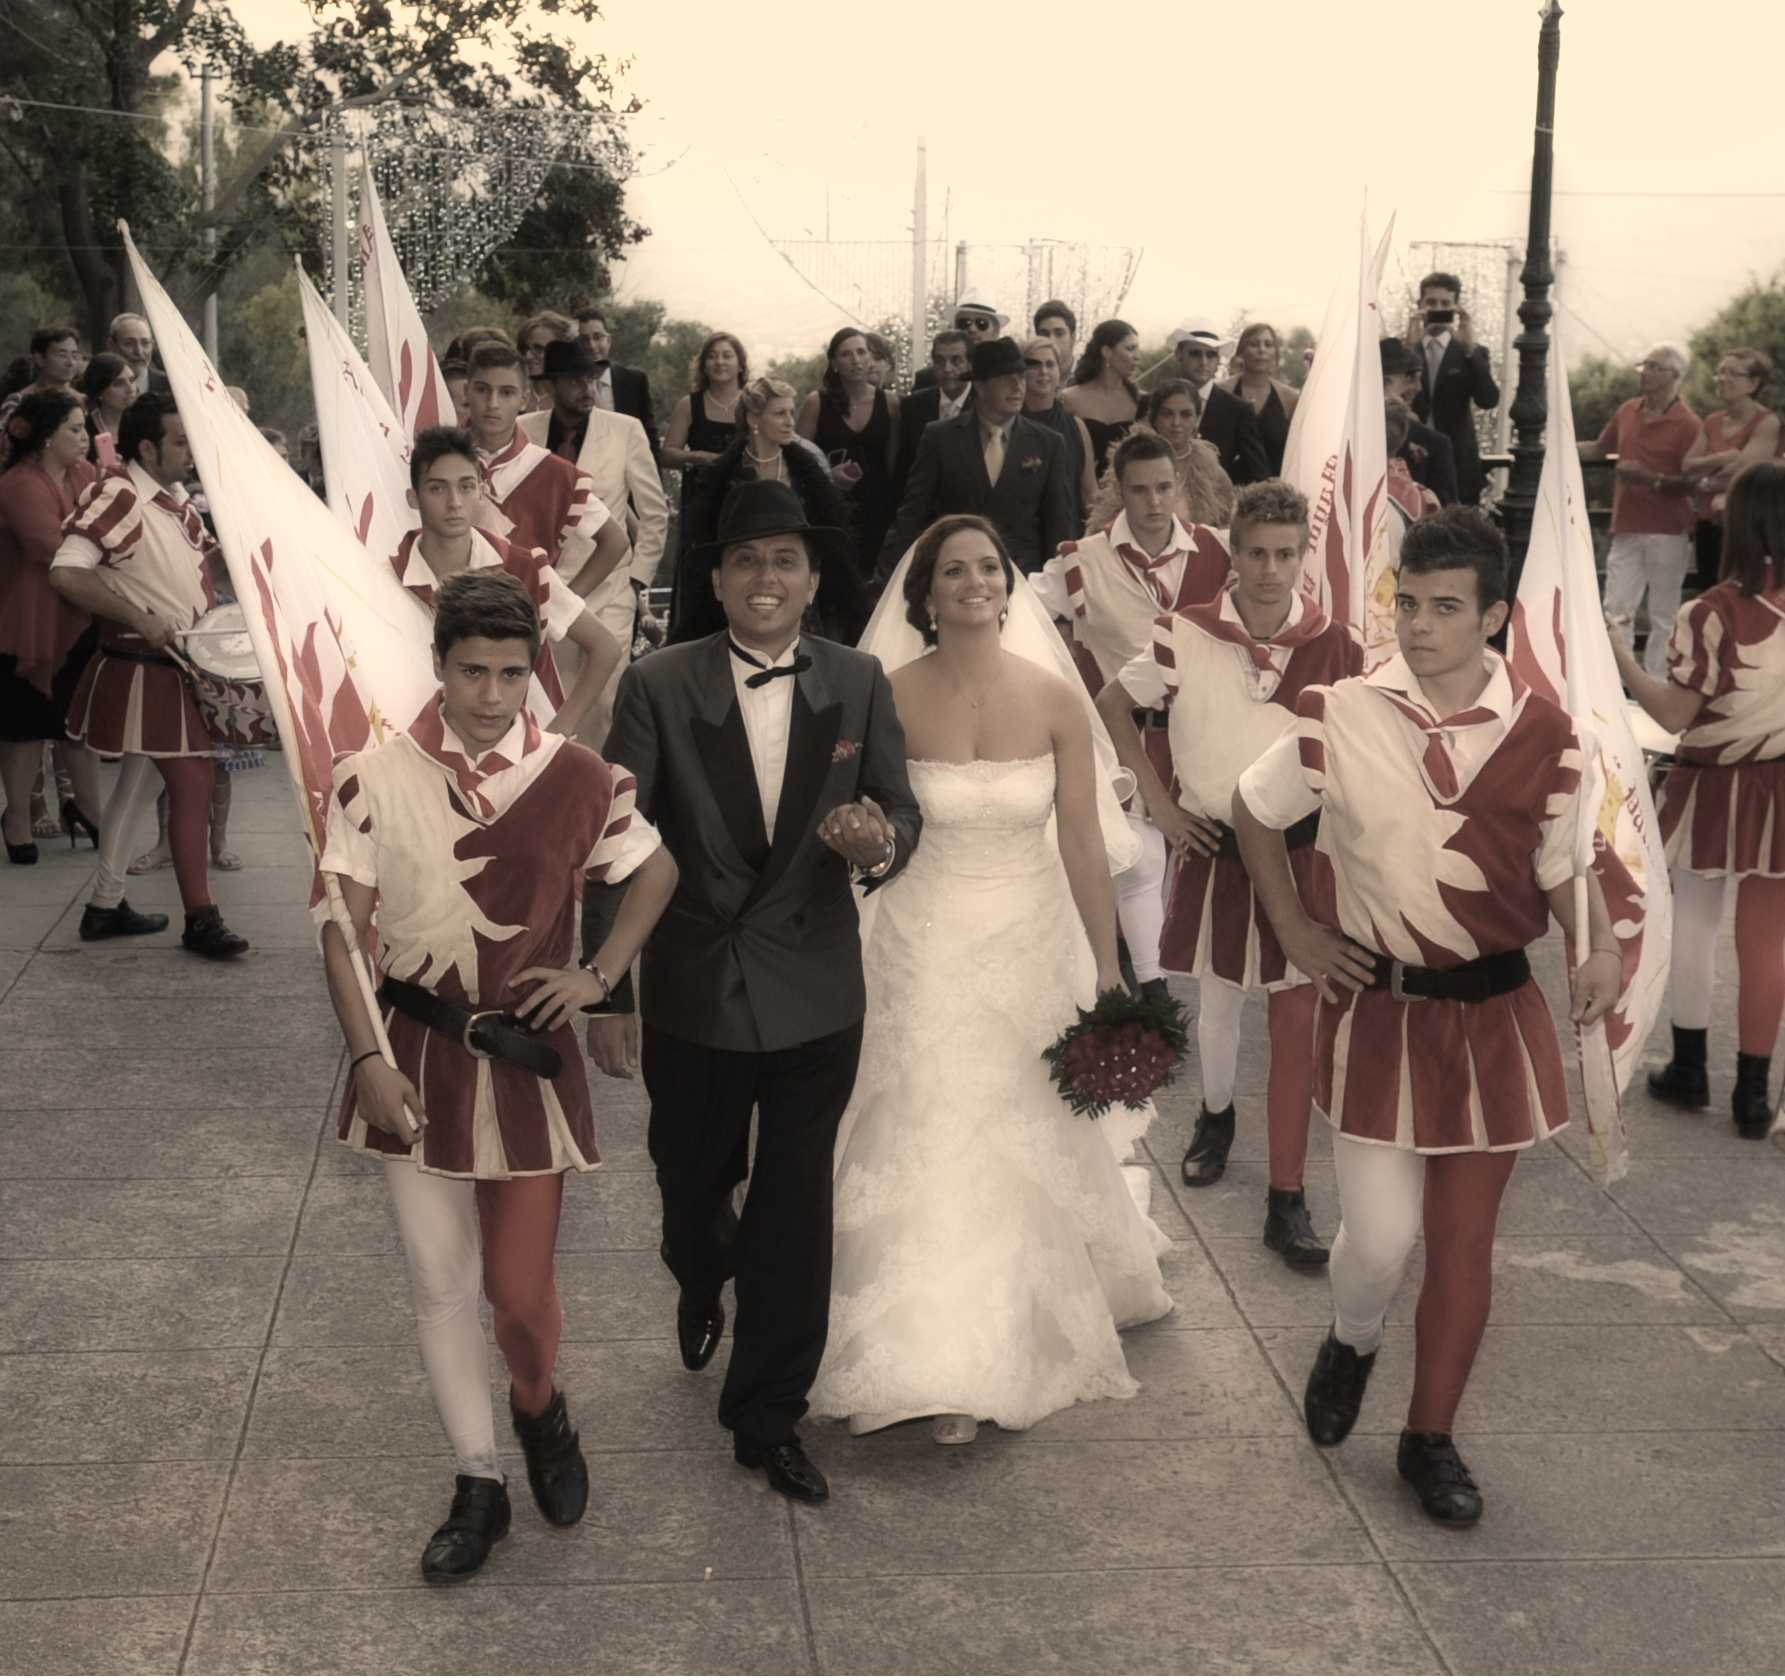 Ultima puntata di "Non ditelo alla sposa Italia", in Sicilia | Digitale terrestre: Dtti.it